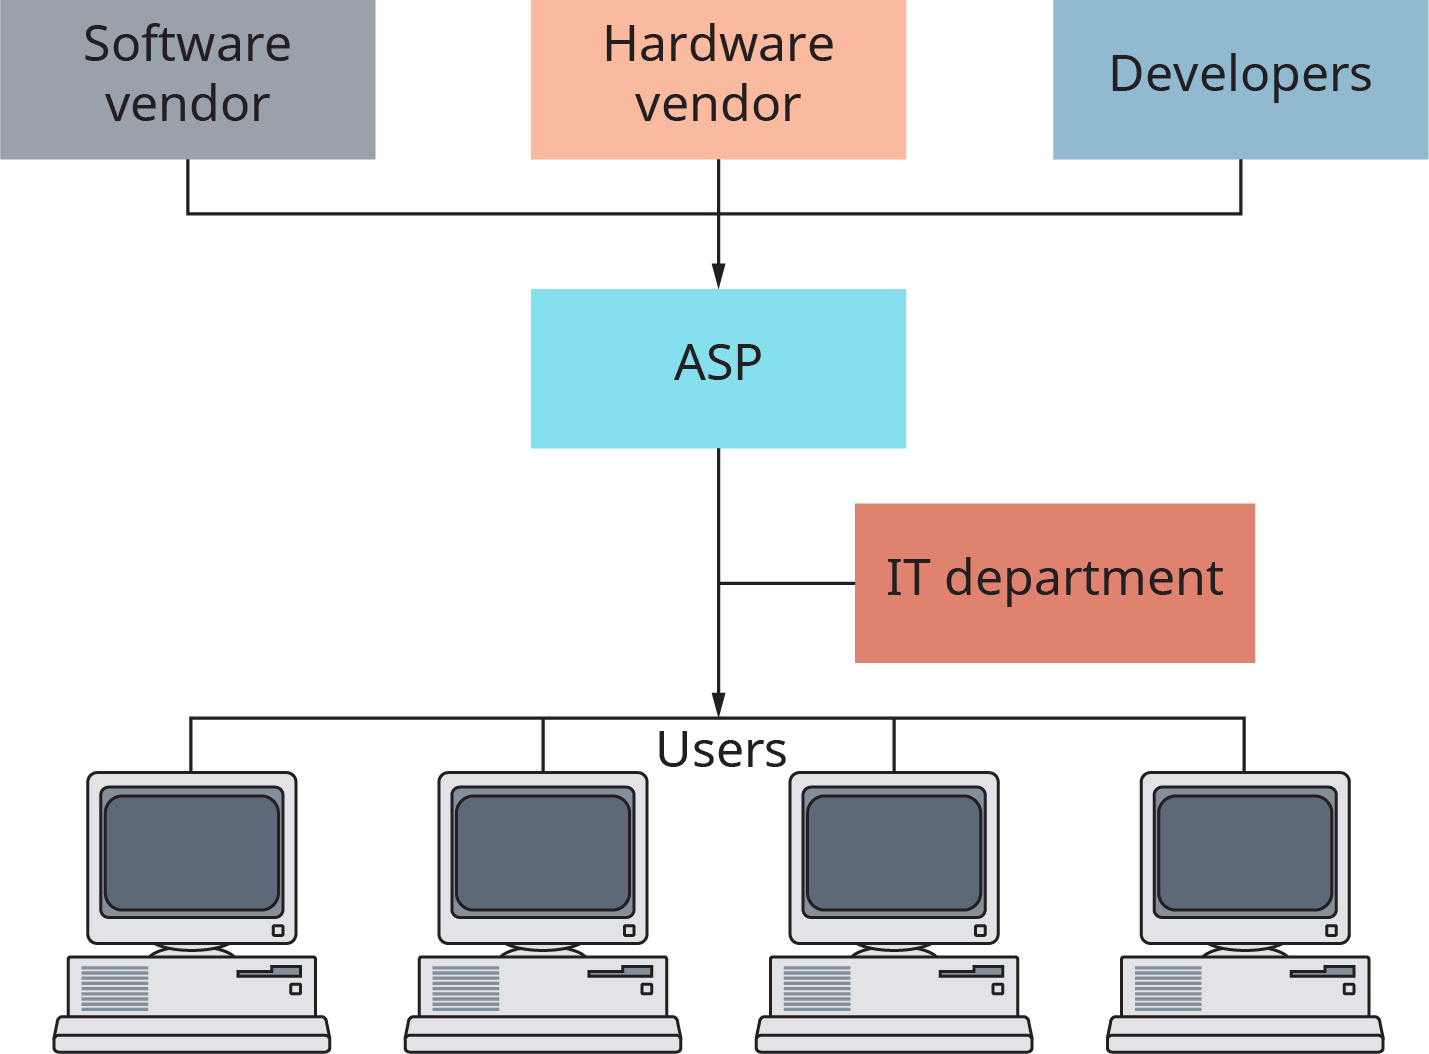 يوضح الرسم التخطيطي أن بائع البرامج وبائع الأجهزة والمطورين يتدفقون جميعًا إلى A S P، والذي يتدفق بعد ذلك إلى جمهور من المستخدمين. بين A S P والمستخدمين يوجد قسم I T.